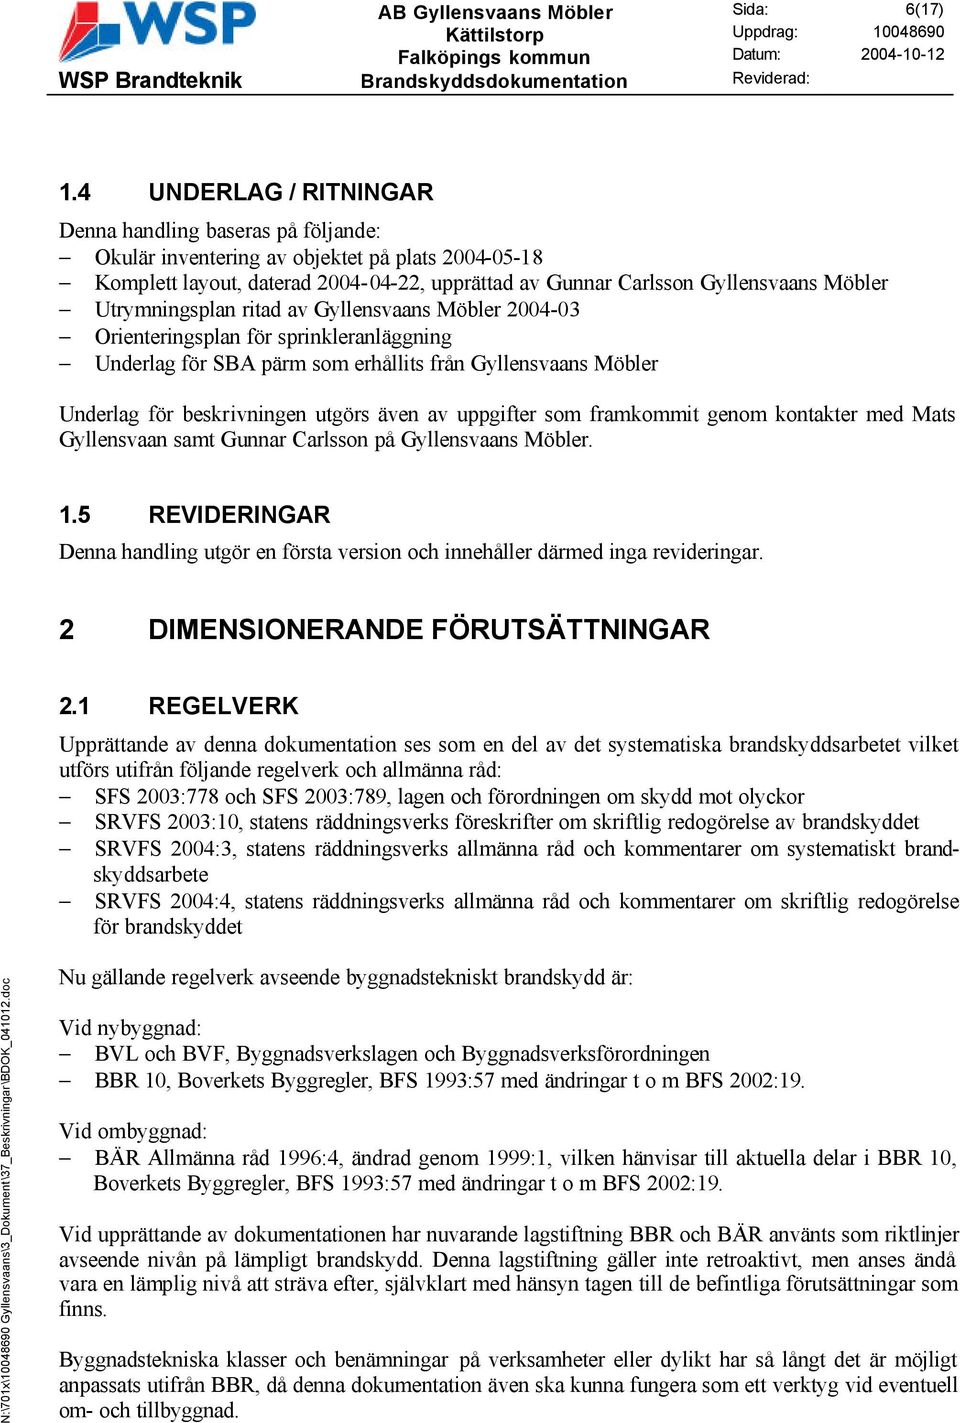 Utrymningsplan ritad av Gyllensvaans Möbler 2004-03 Orienteringsplan för sprinkleranläggning Underlag för SBA pärm som erhållits från Gyllensvaans Möbler Underlag för beskrivningen utgörs även av